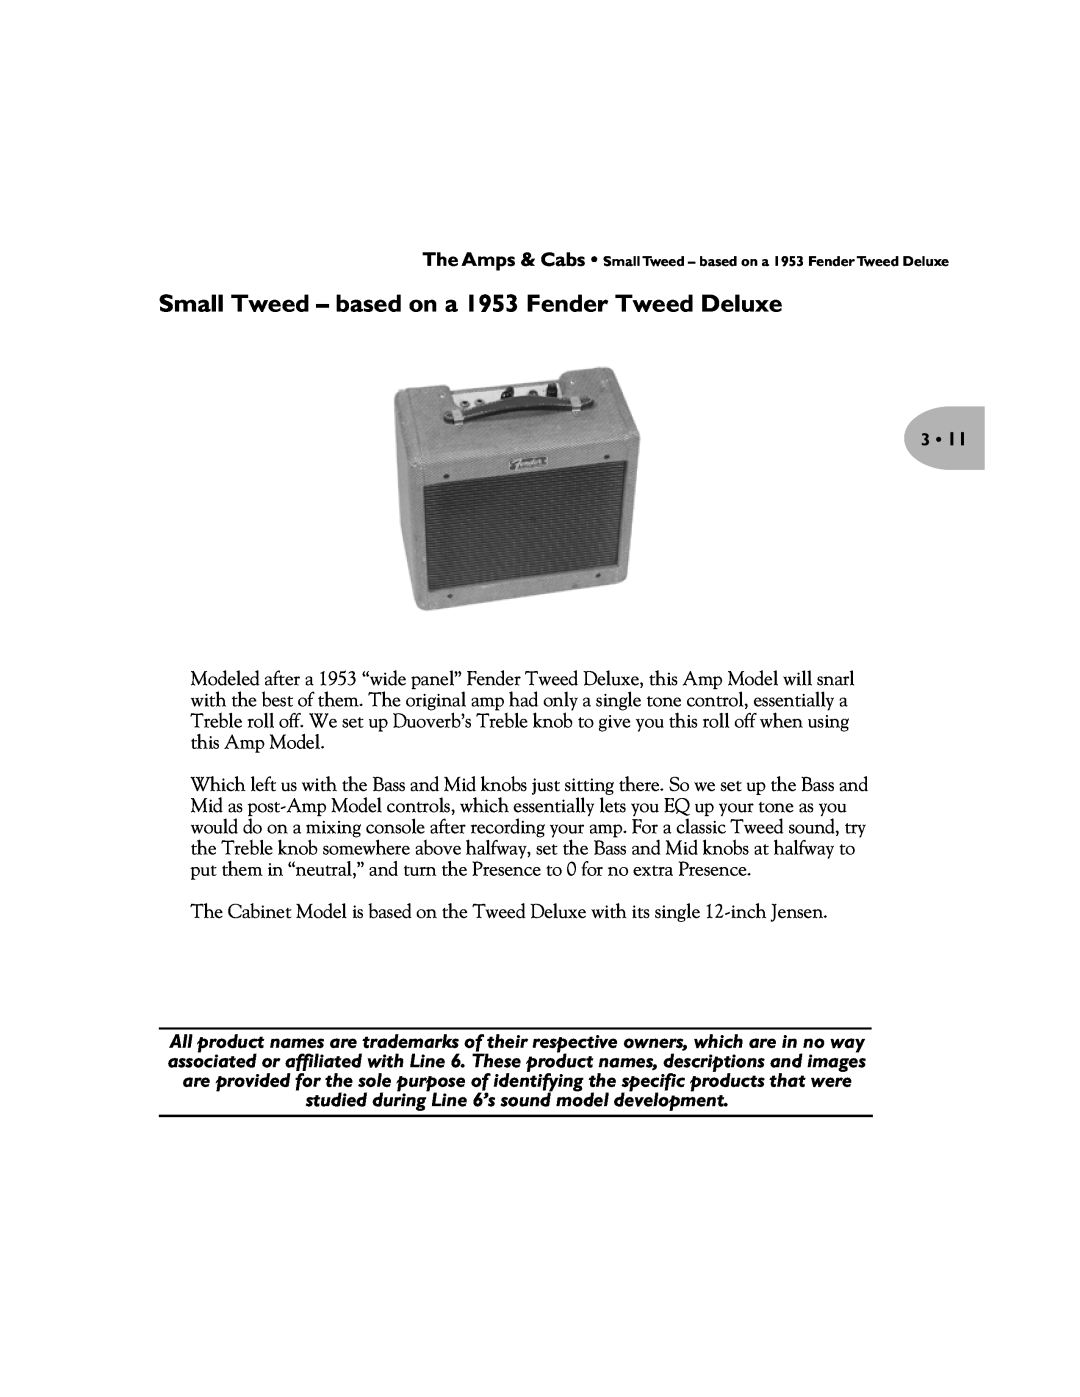 Line 6 Pilot's Handbook manual Small Tweed - based on a 1953 Fender Tweed Deluxe 